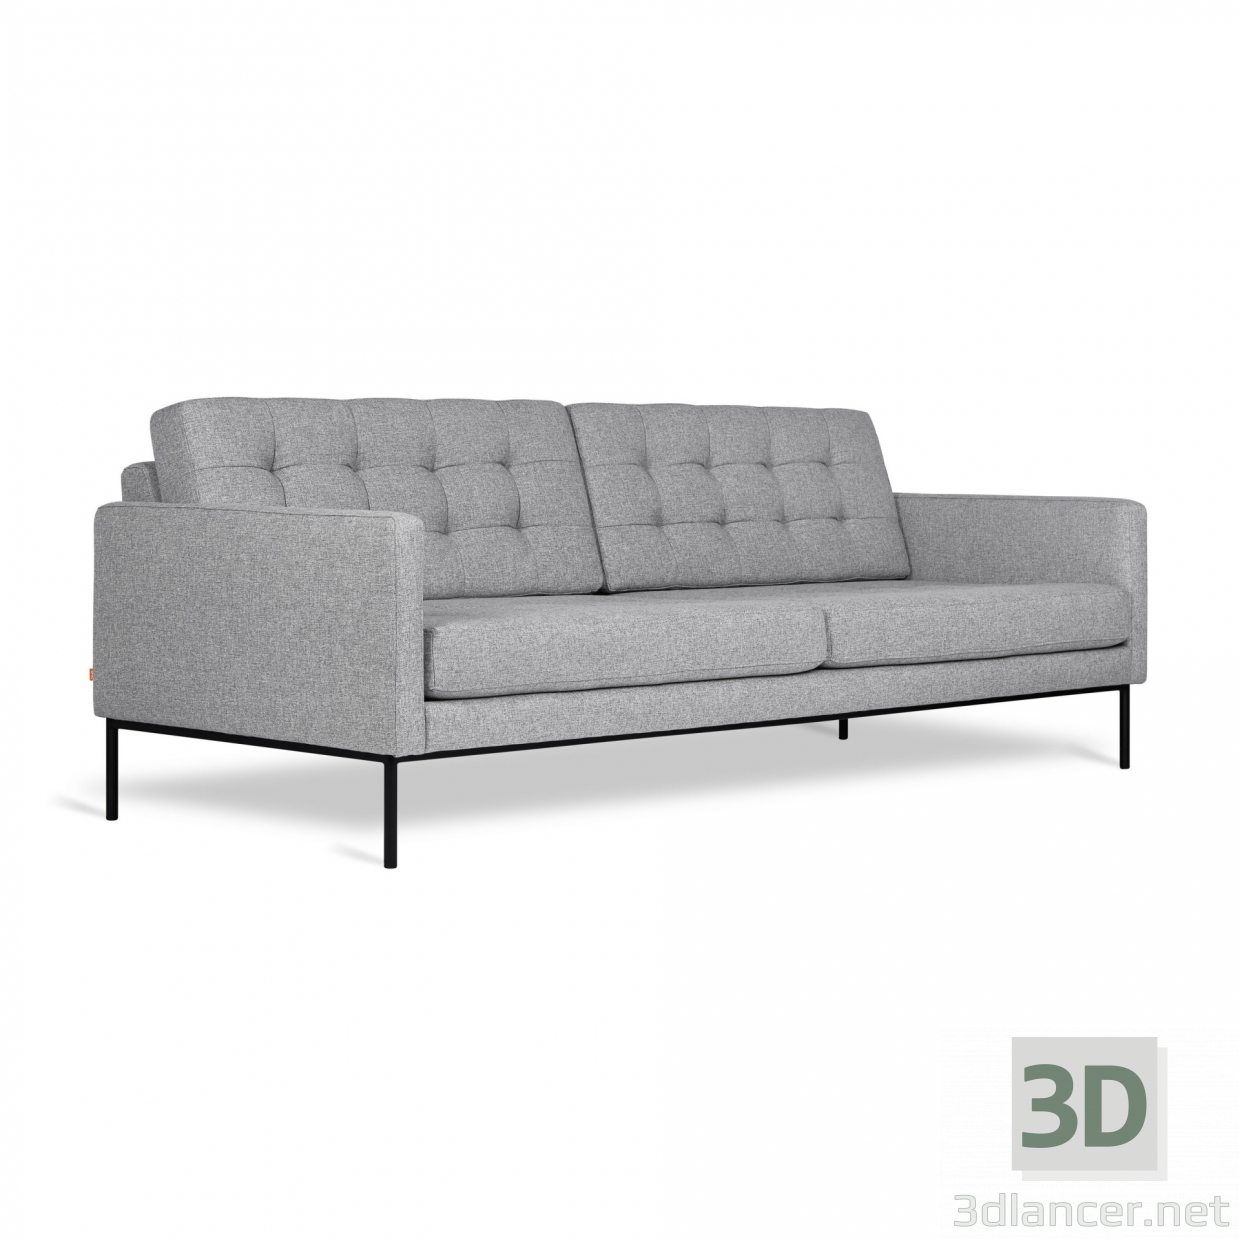 3d Towne Sofa by Gus model buy - render